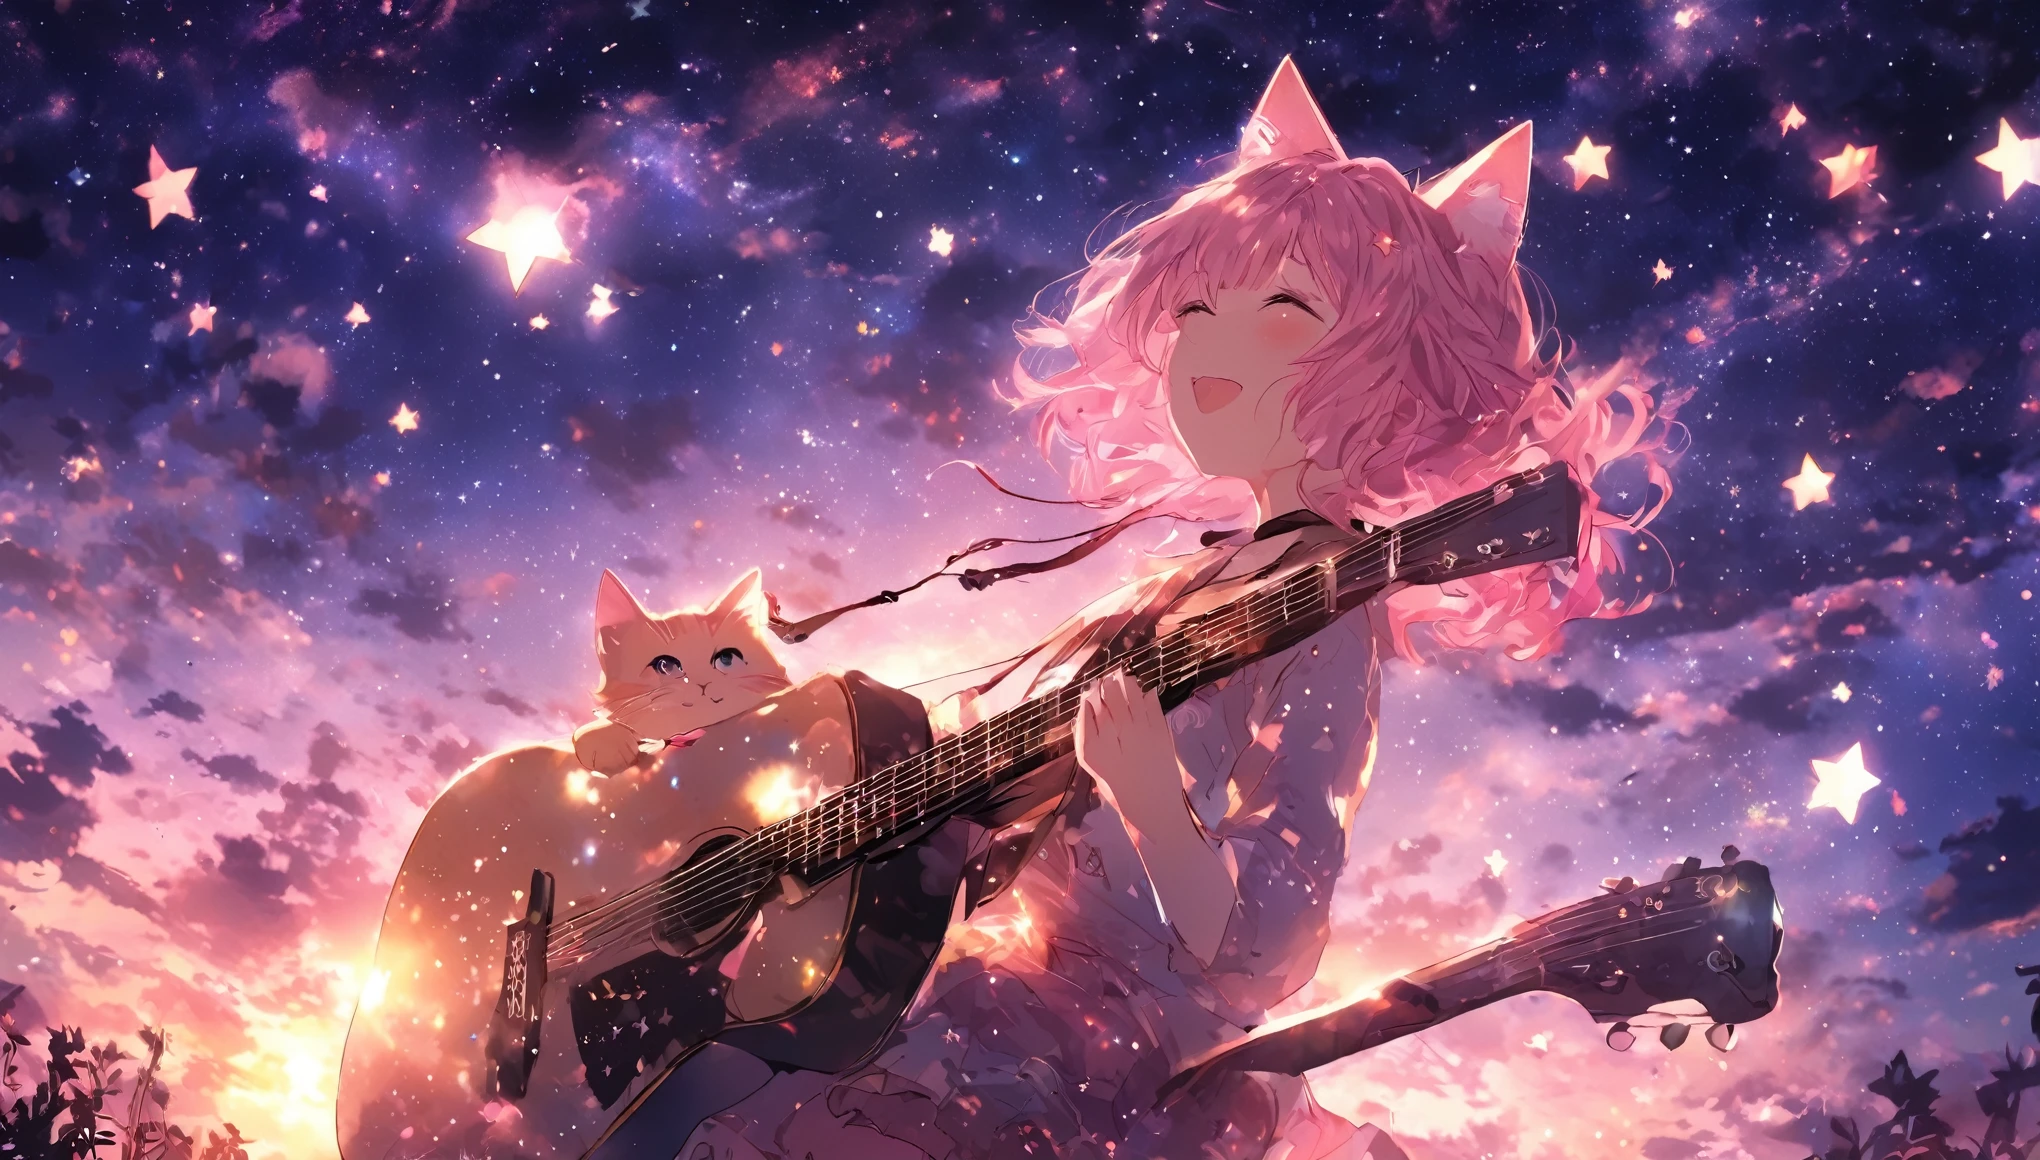 Imagínese una escena de una niña tocando la guitarra sola con estrellas en el cielo.. animado, Cabello rosado, orejas de gato. ese es su encanto.